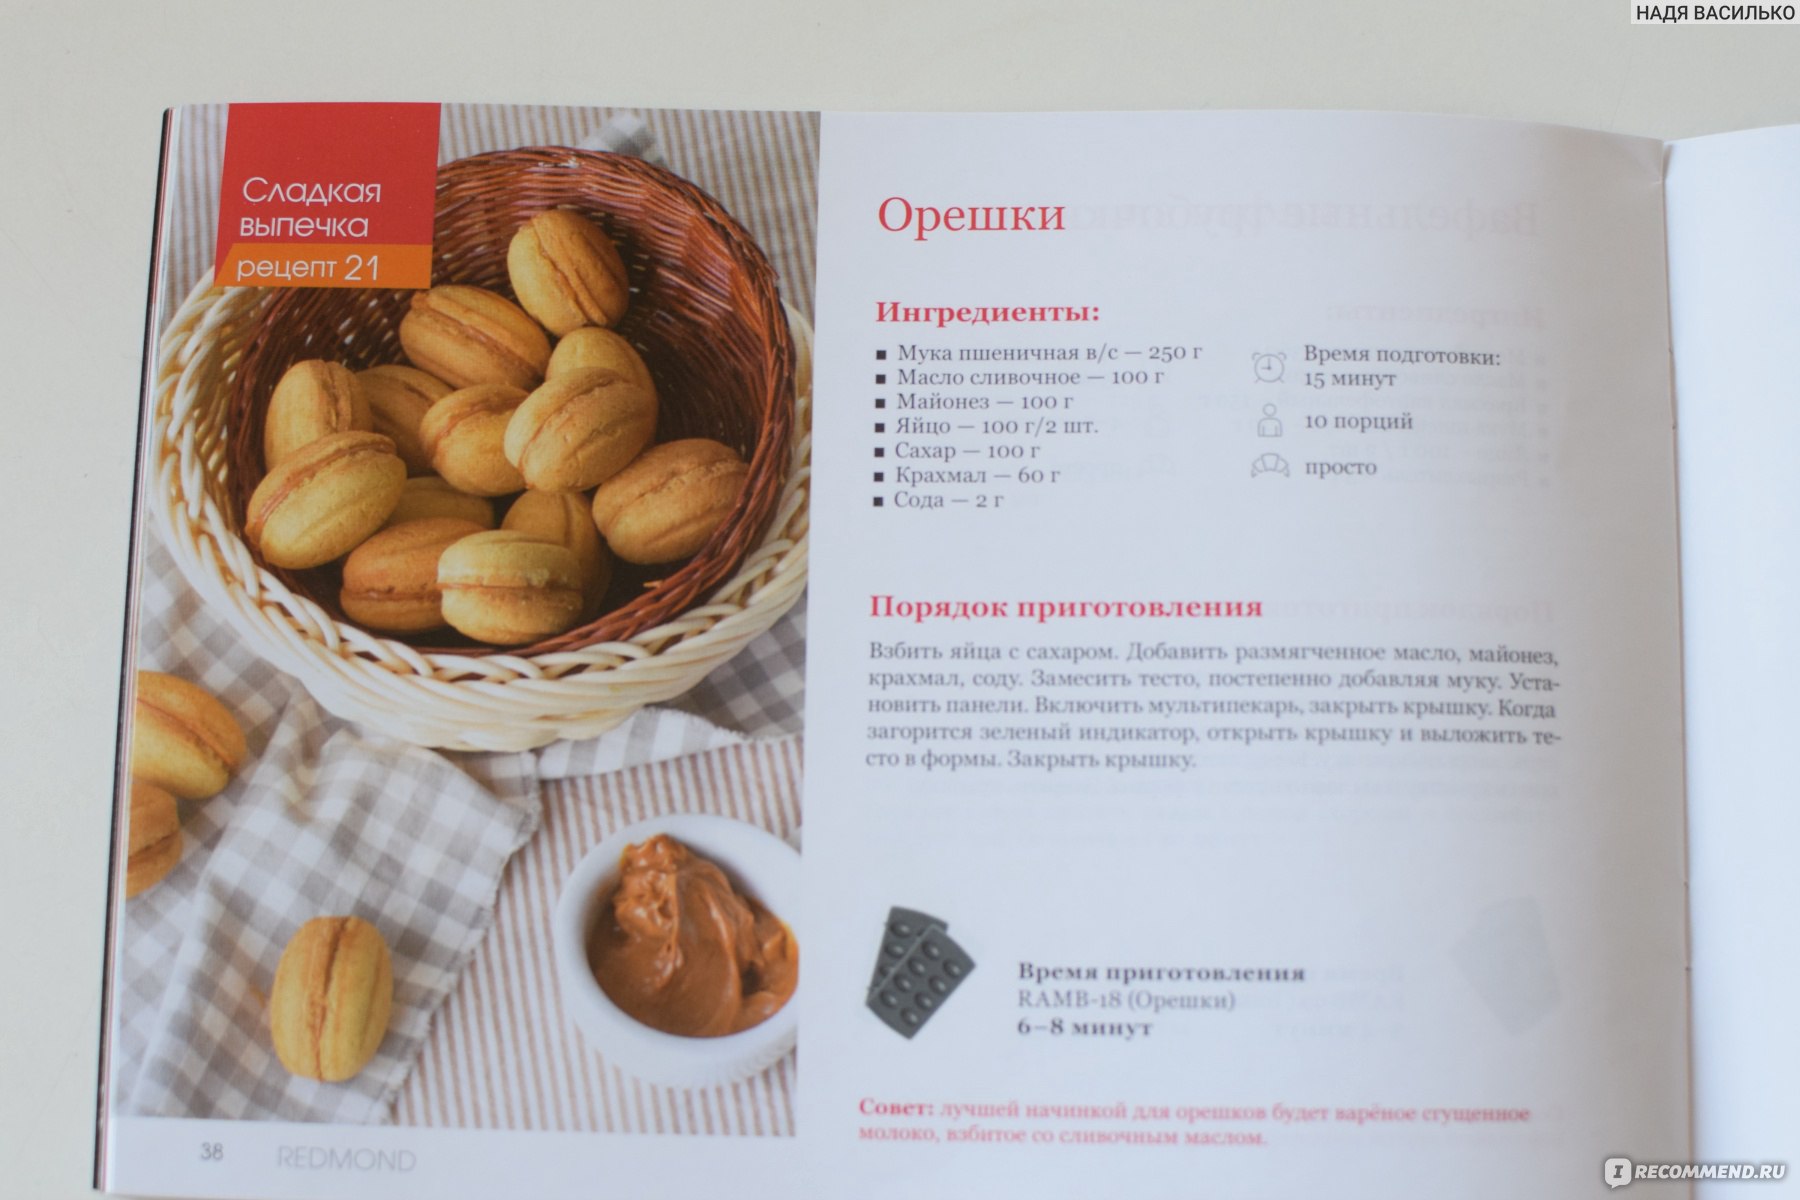 Тесто на орешки со сгущенкой в орешнице как раньше на газу рецепт с фото